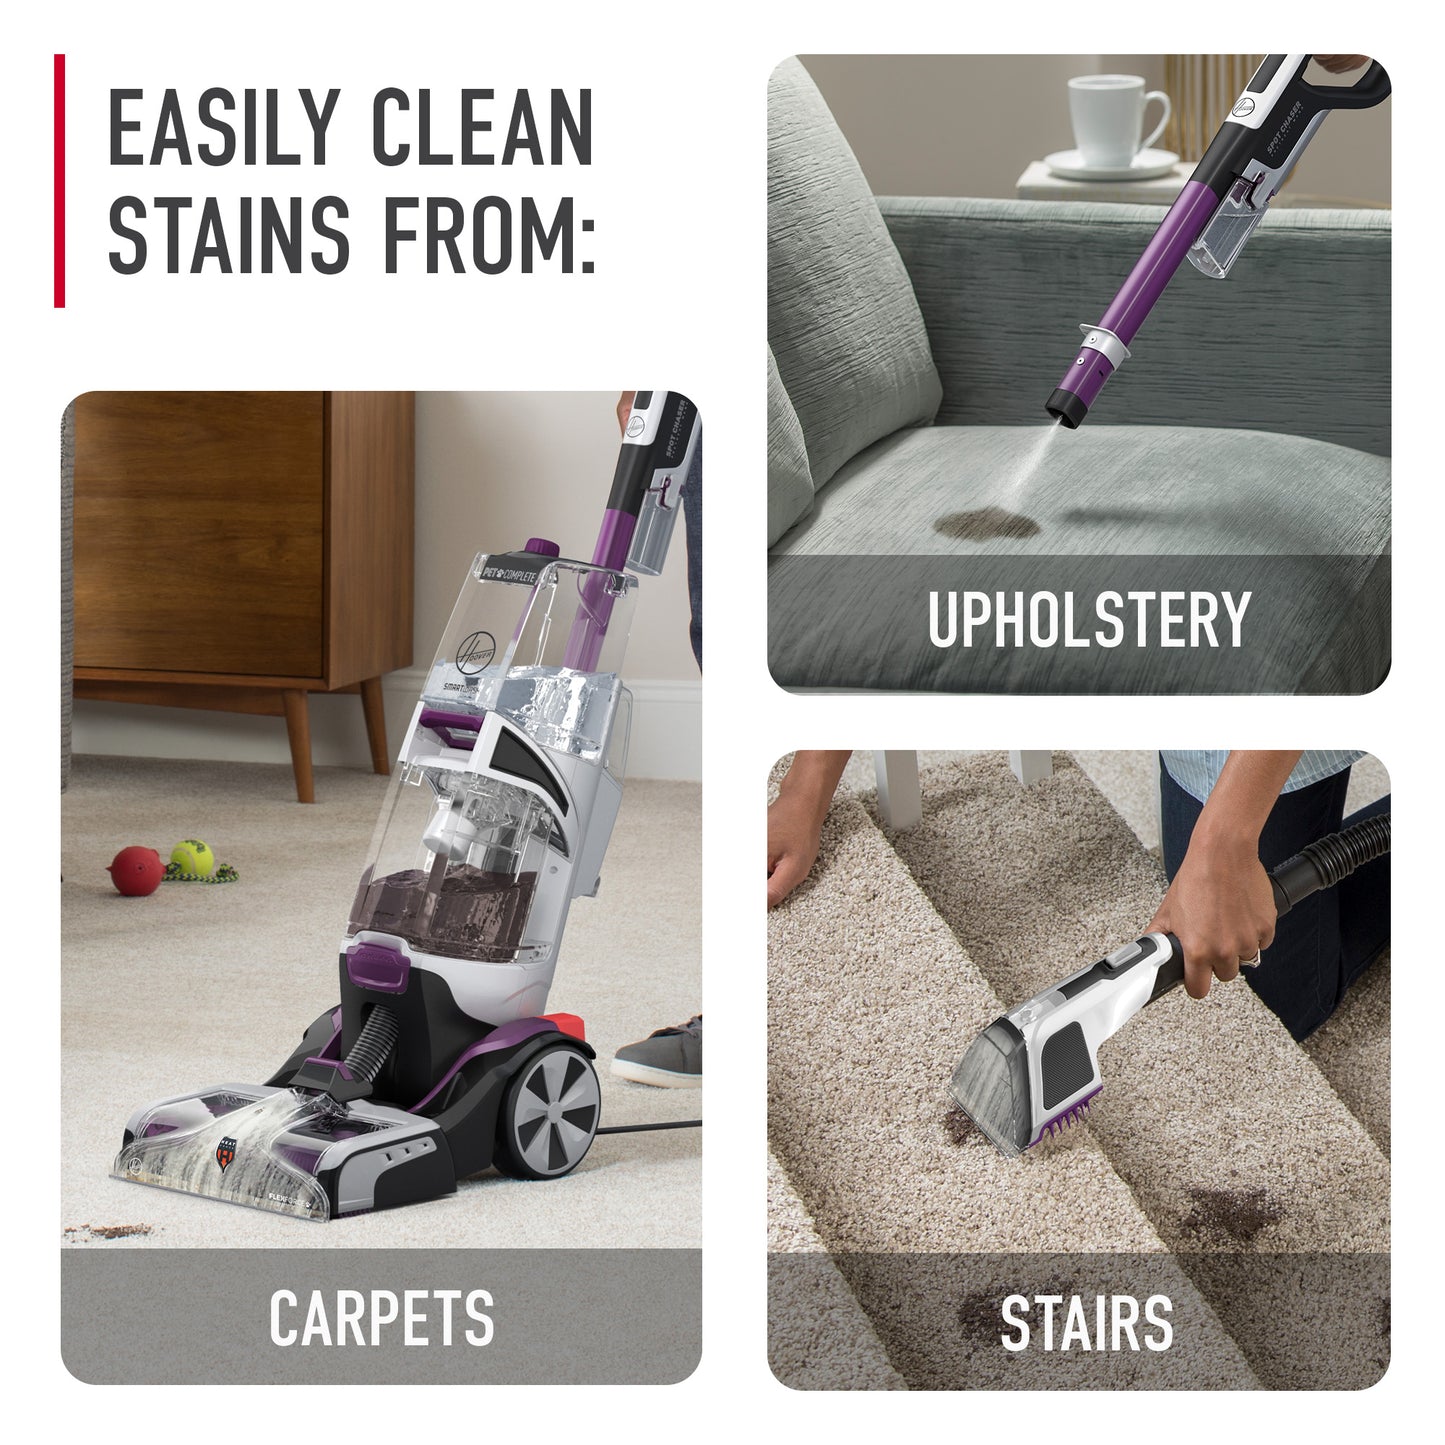 SmartWash PET Complete Automatic Carpet Cleaner